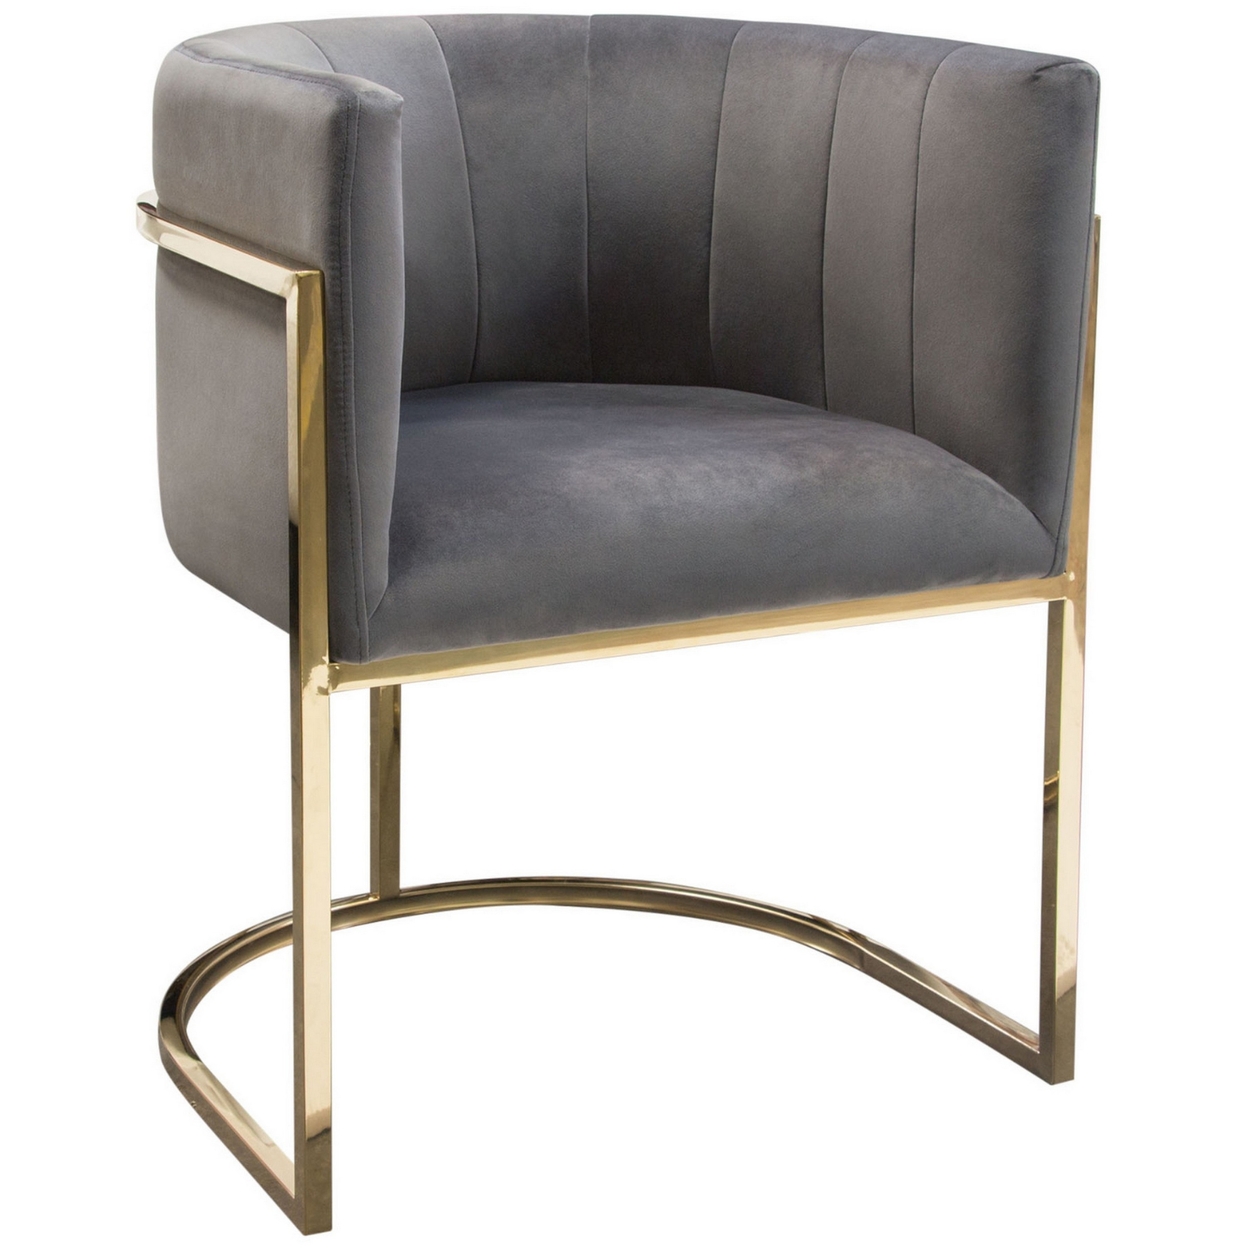 Meha 24 Inch Cantilever Dining Chair, Gray Velvet Upholstery, Gold Frame- Saltoro Sherpi